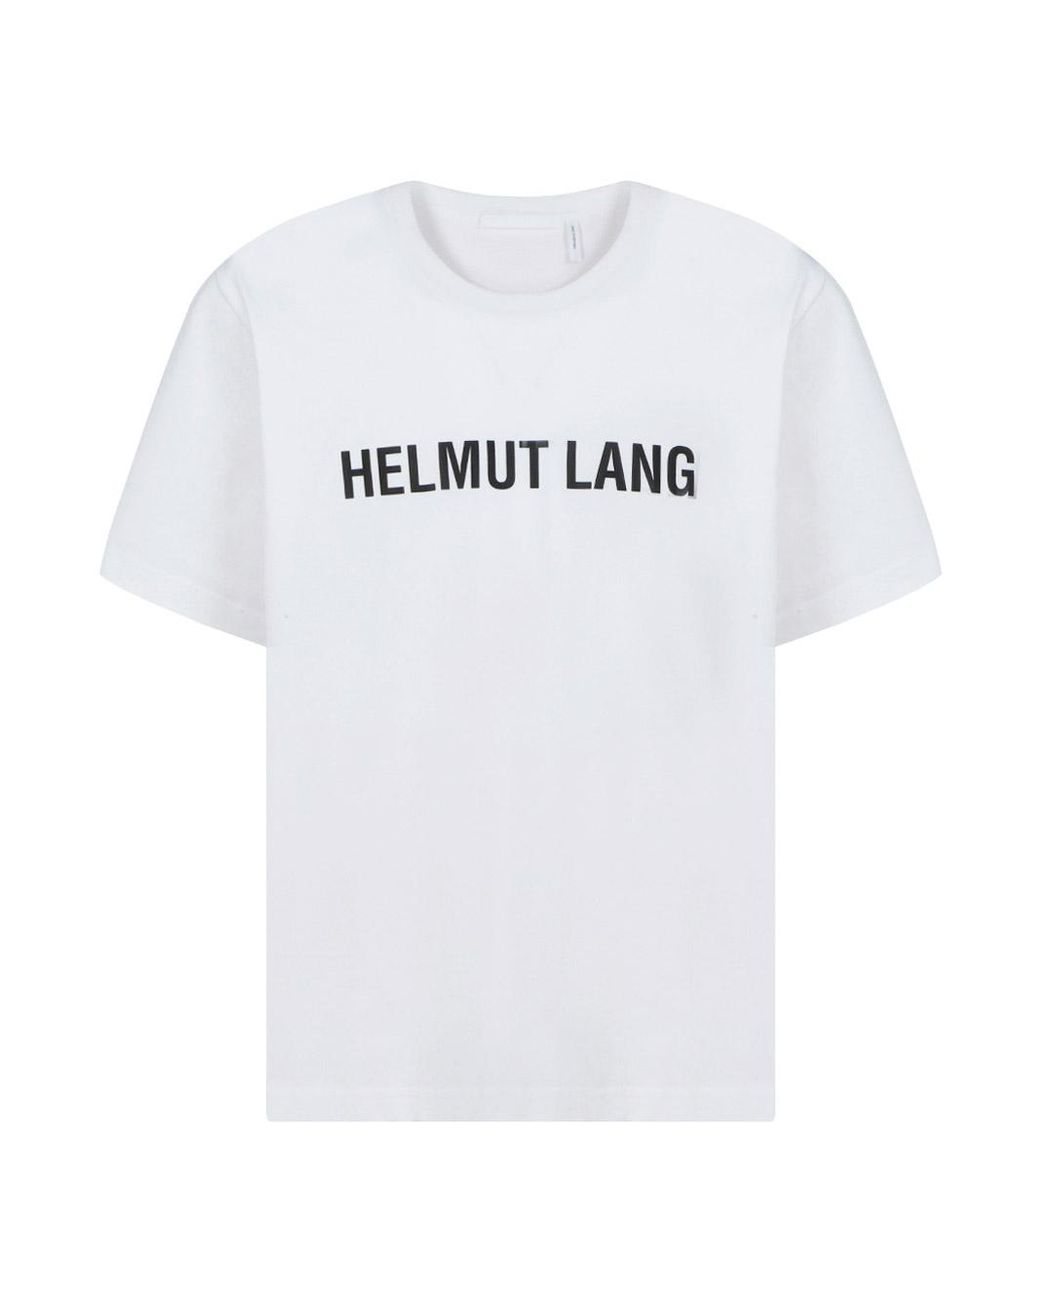 Strøm I særdeleshed Prevail Helmut Lang T-shirt in White for Men | Lyst